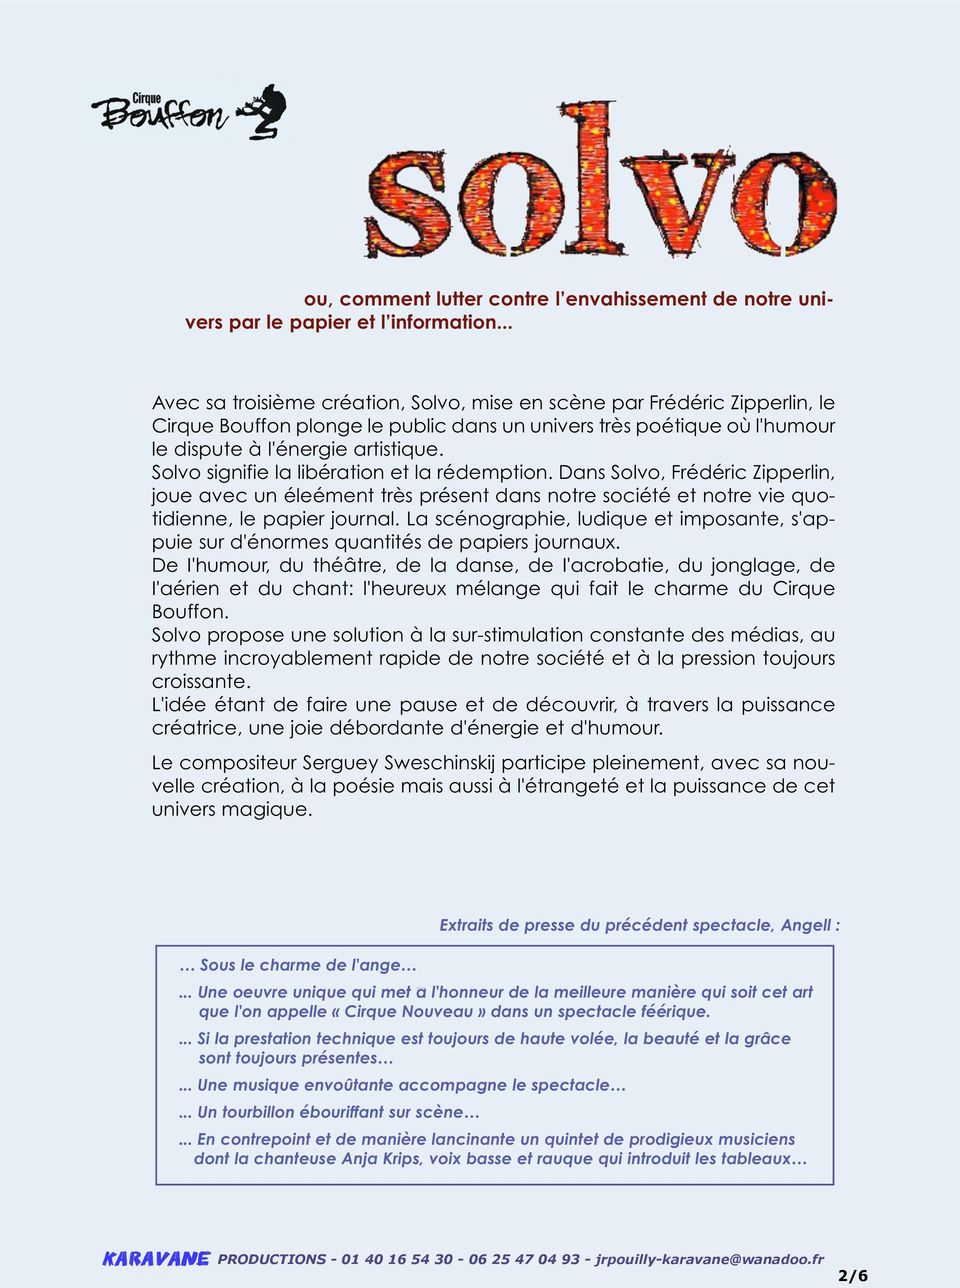 Solvo signifie la libération et la rédemption. Dans Solvo, Frédéric Zipperlin, joue avec un éleément très présent dans notre société et notre vie quotidienne, le papier journal.